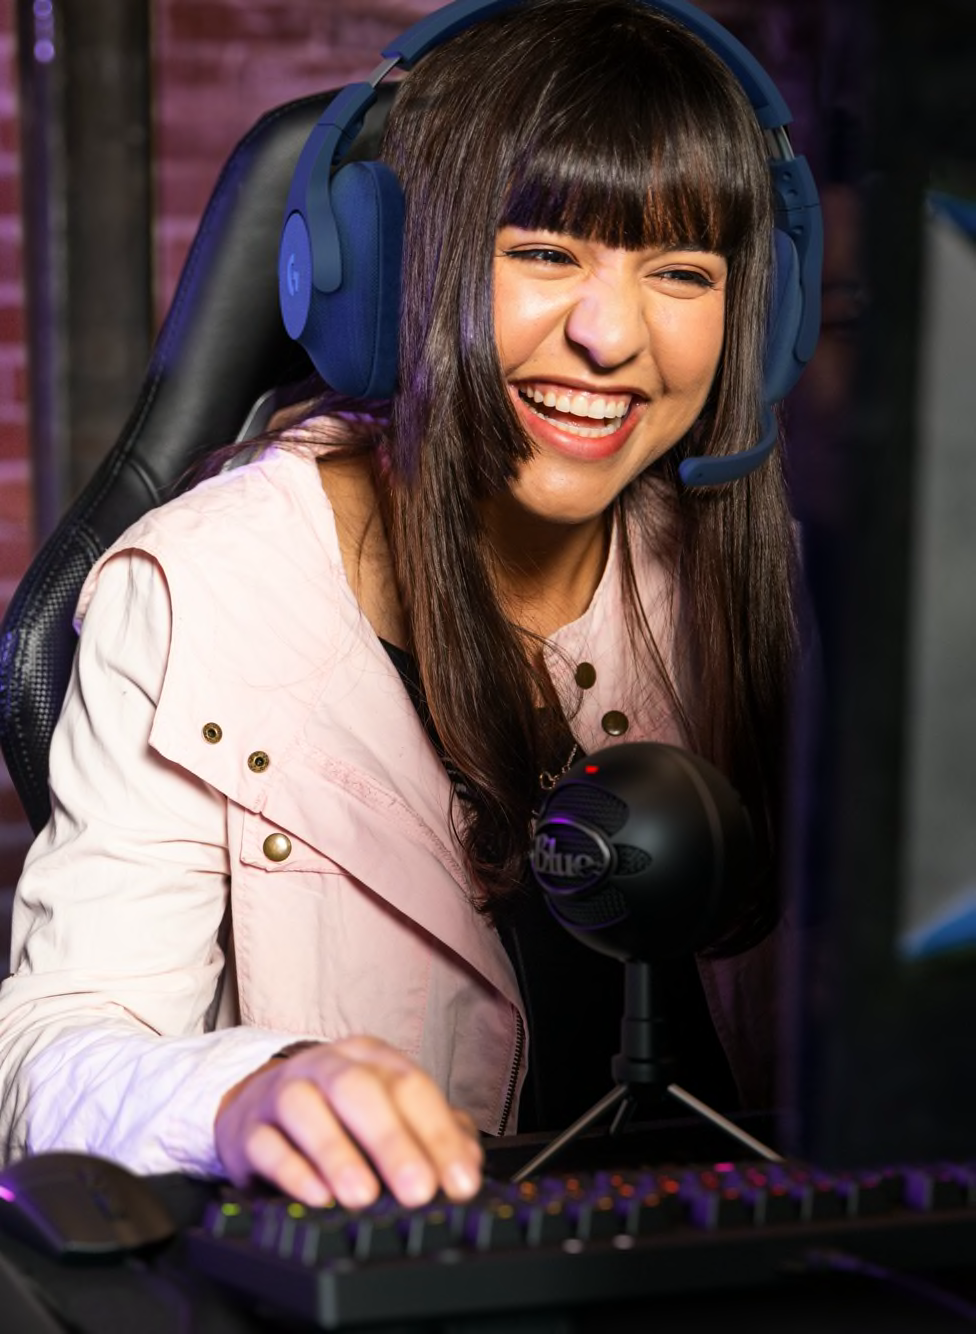 Girl using Gaming headset